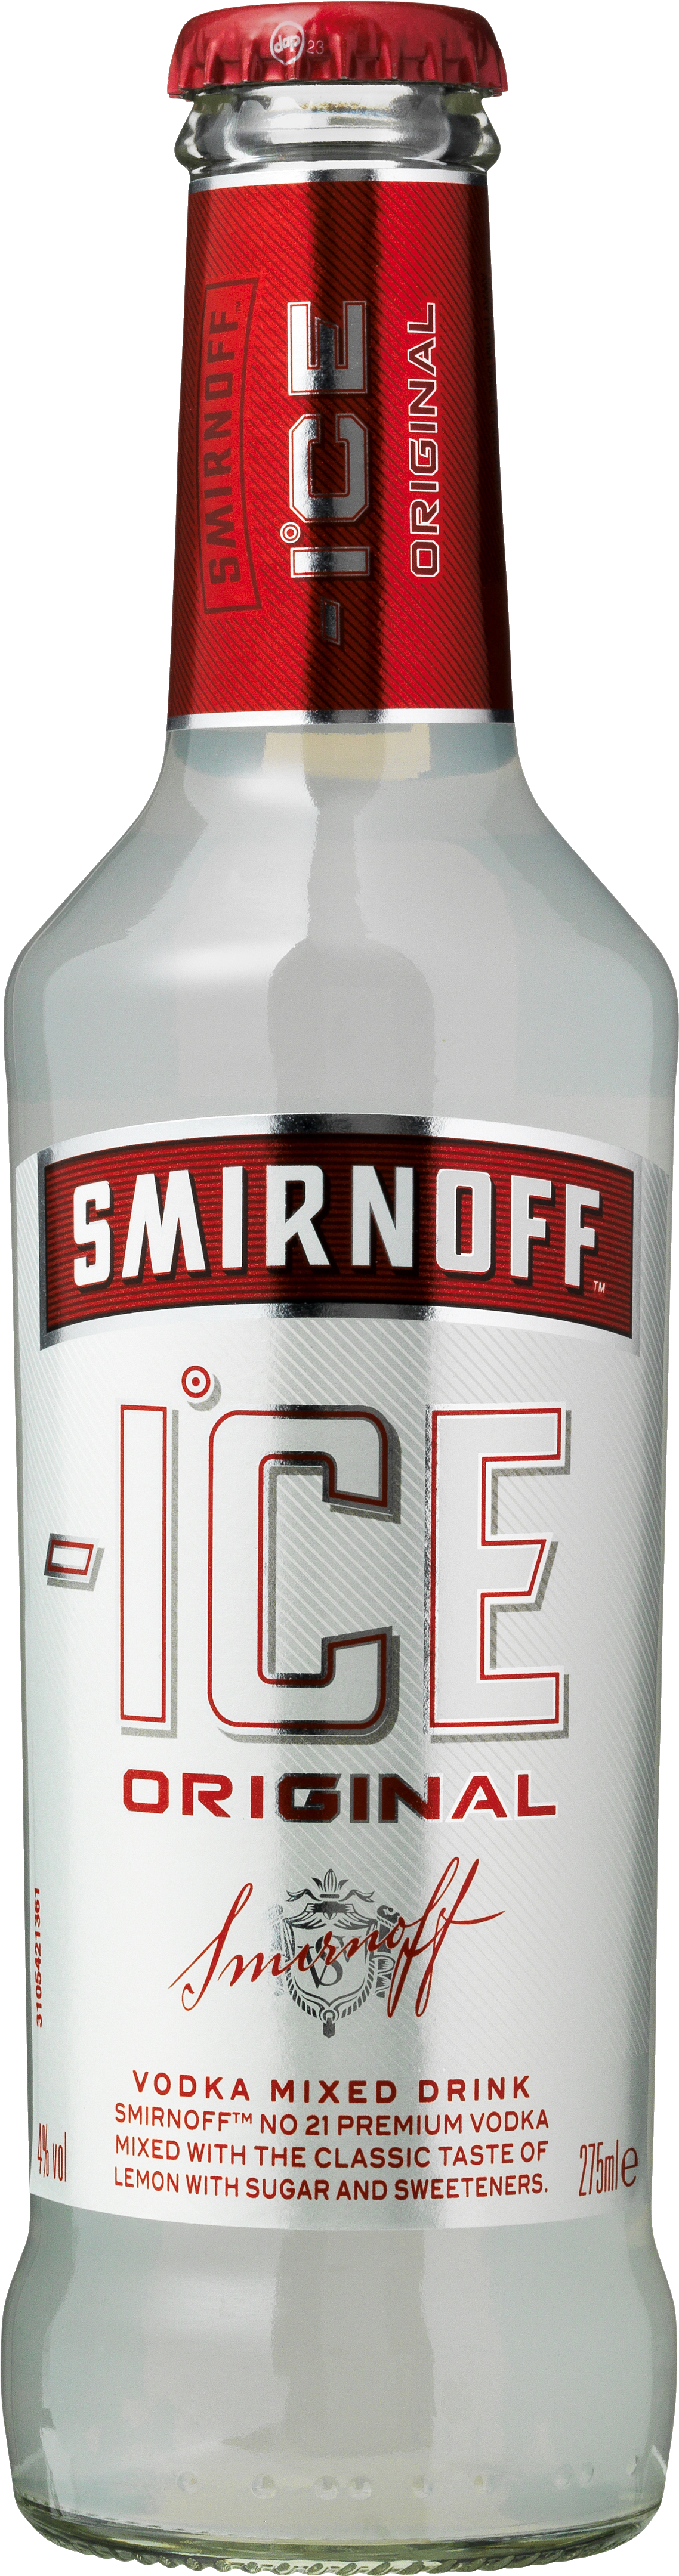 Modstander Lima veltalende Smirnoff Ice Original - 4% - ALKOPOPS - VIN MED MERE .DK